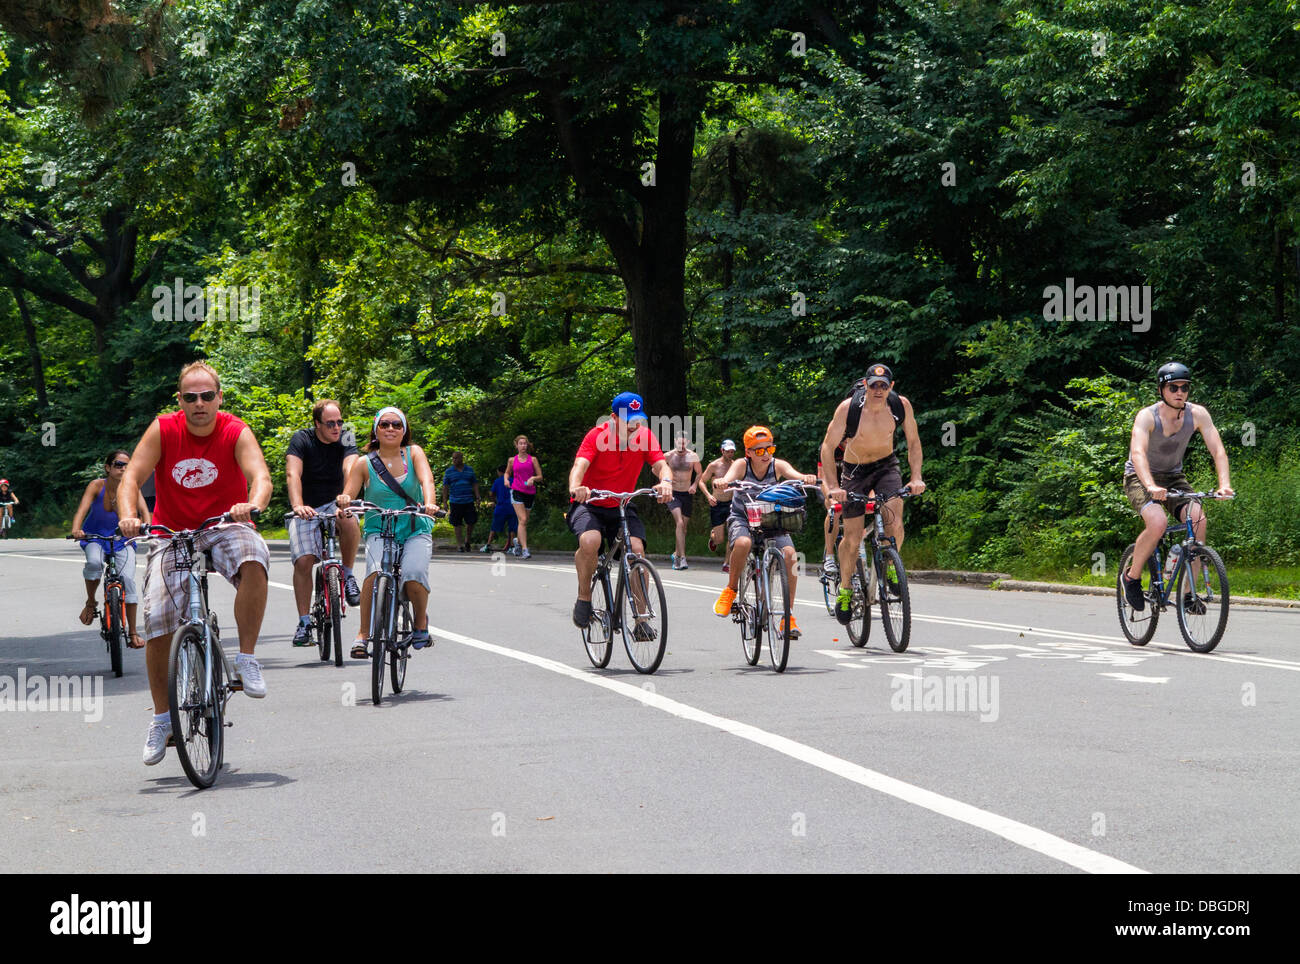 Radfahrer. Leute, die im Central Park, New York City, Rad fahren Stockfoto